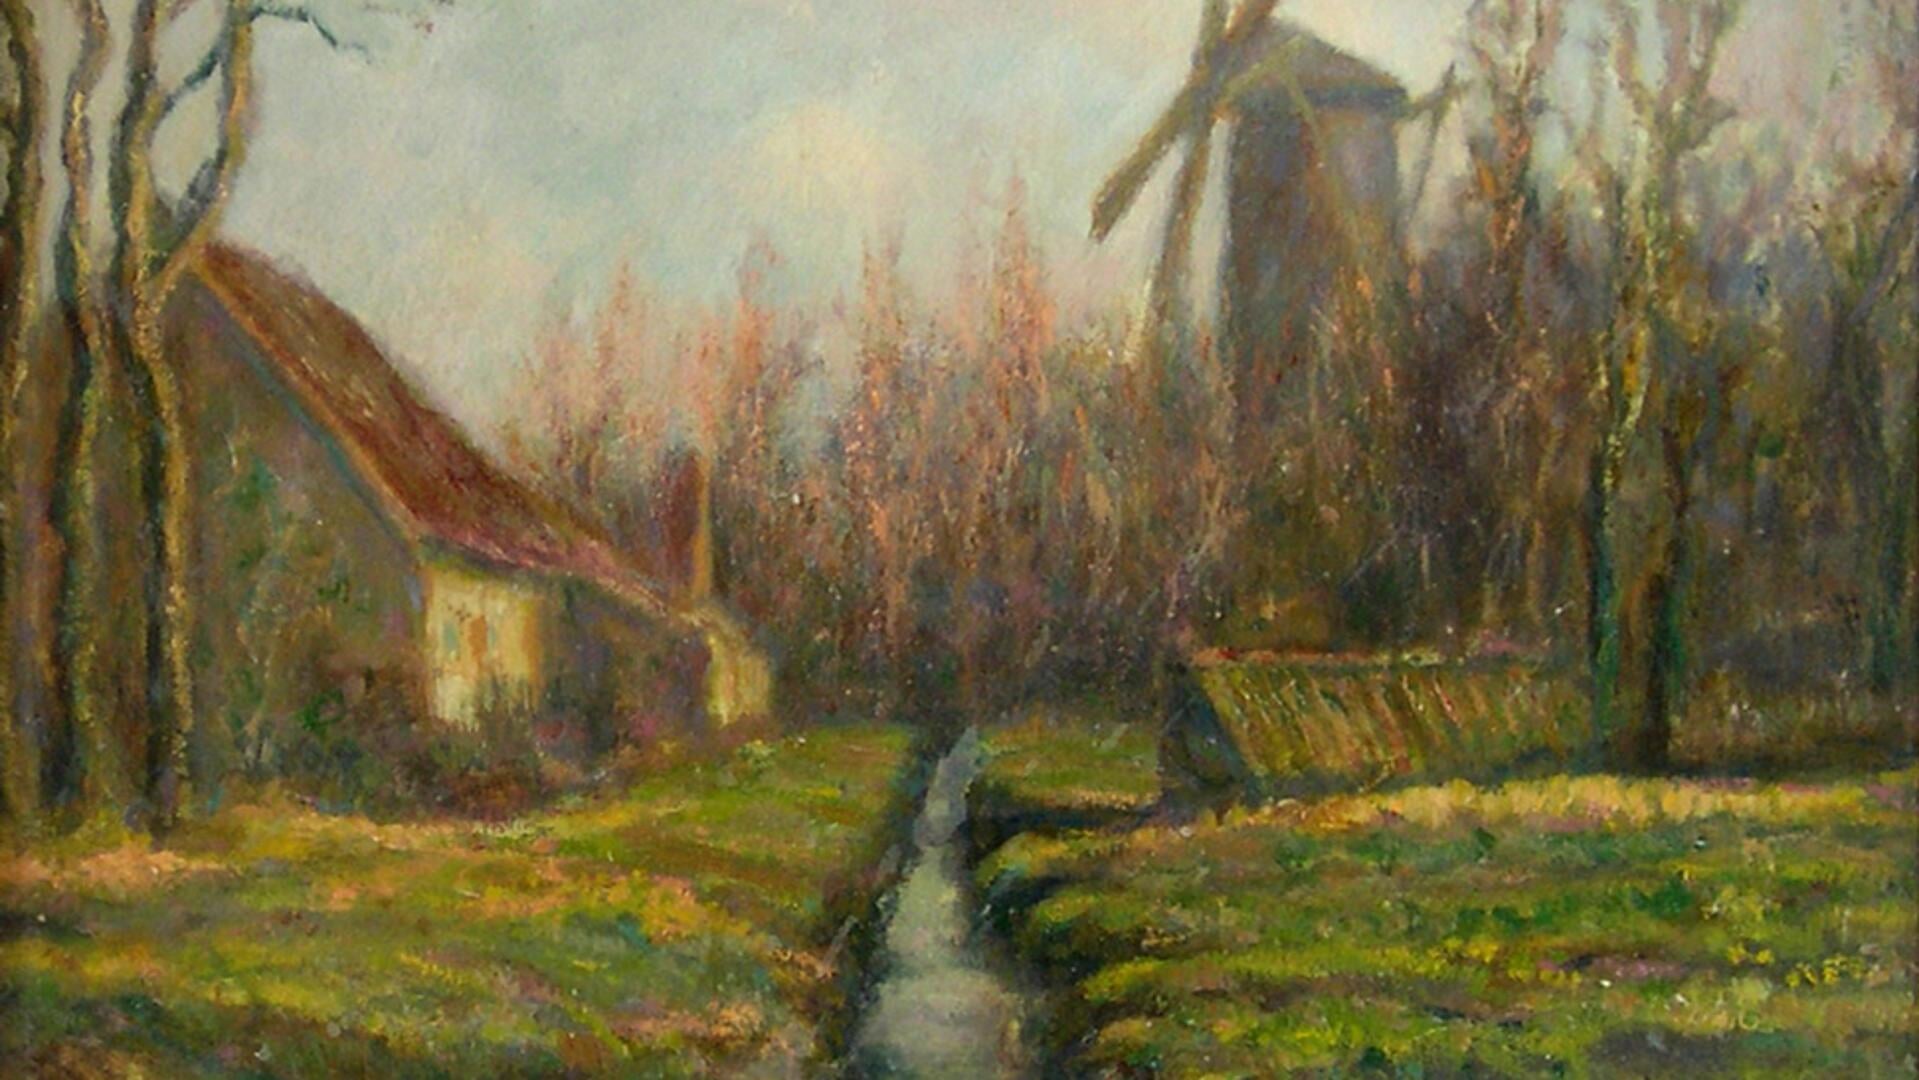 Het is niet bekend in welke omgeving de kunstenaar deze molen schilderde. 